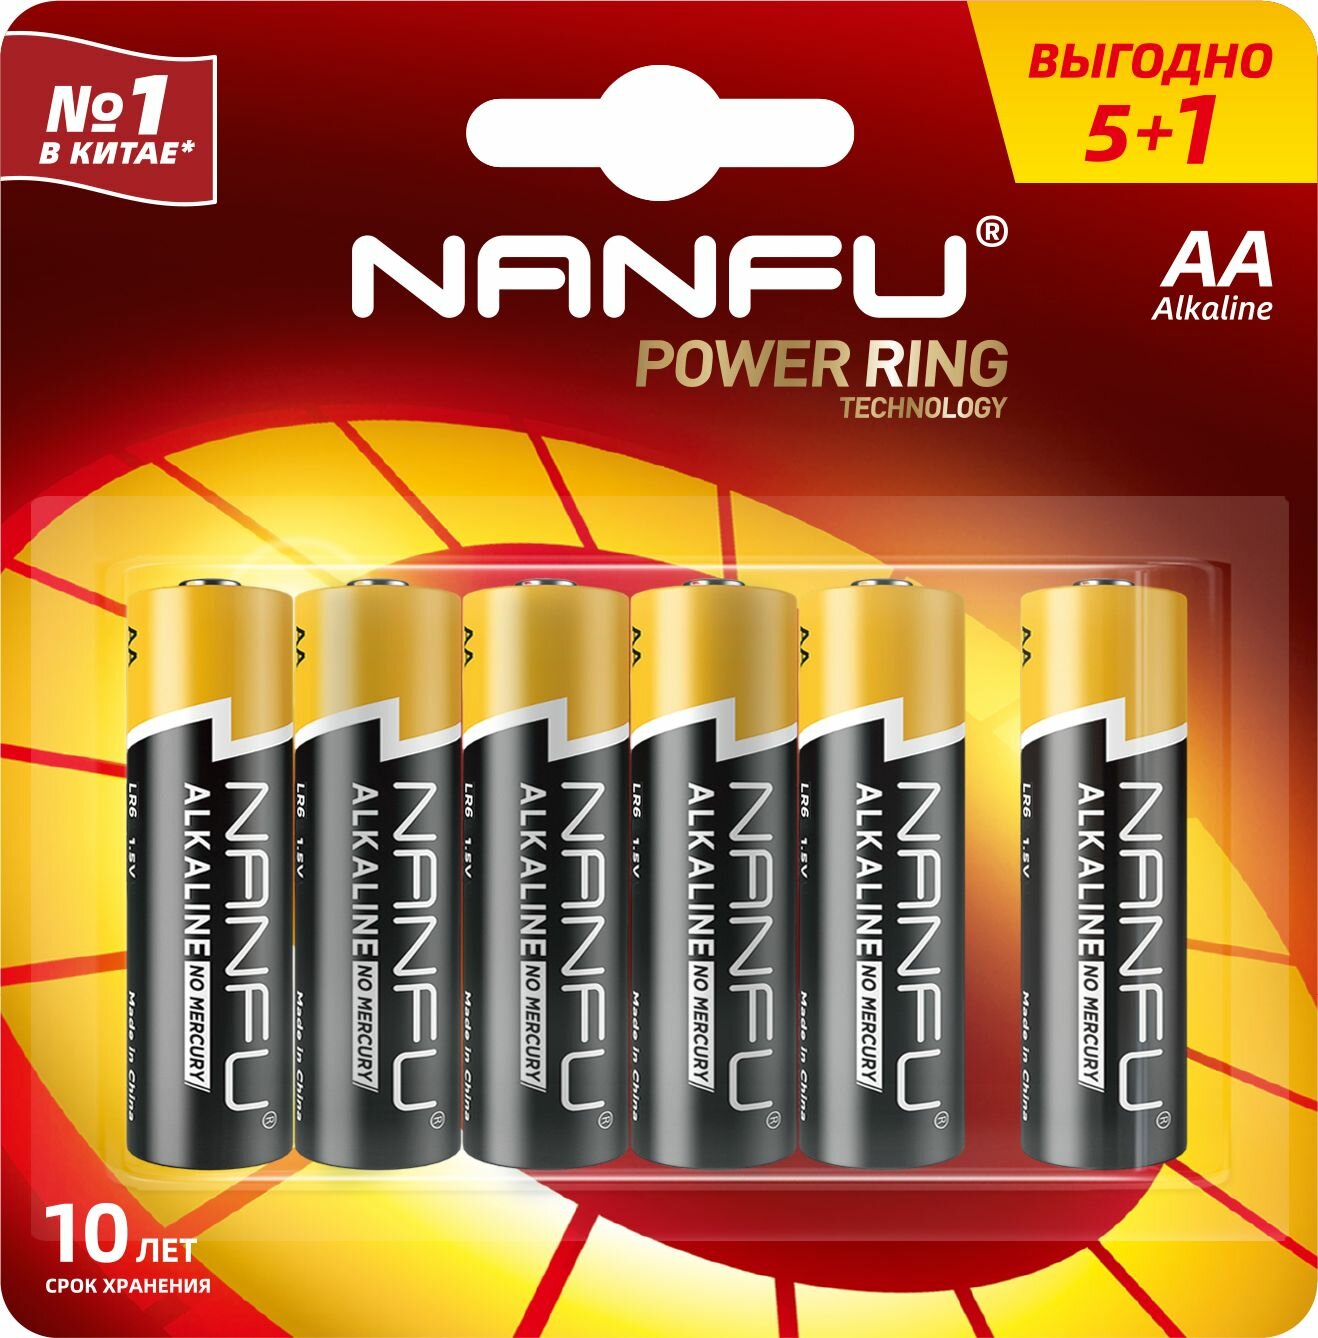 Батарейка NANFU щелочная АА 5+1 шт